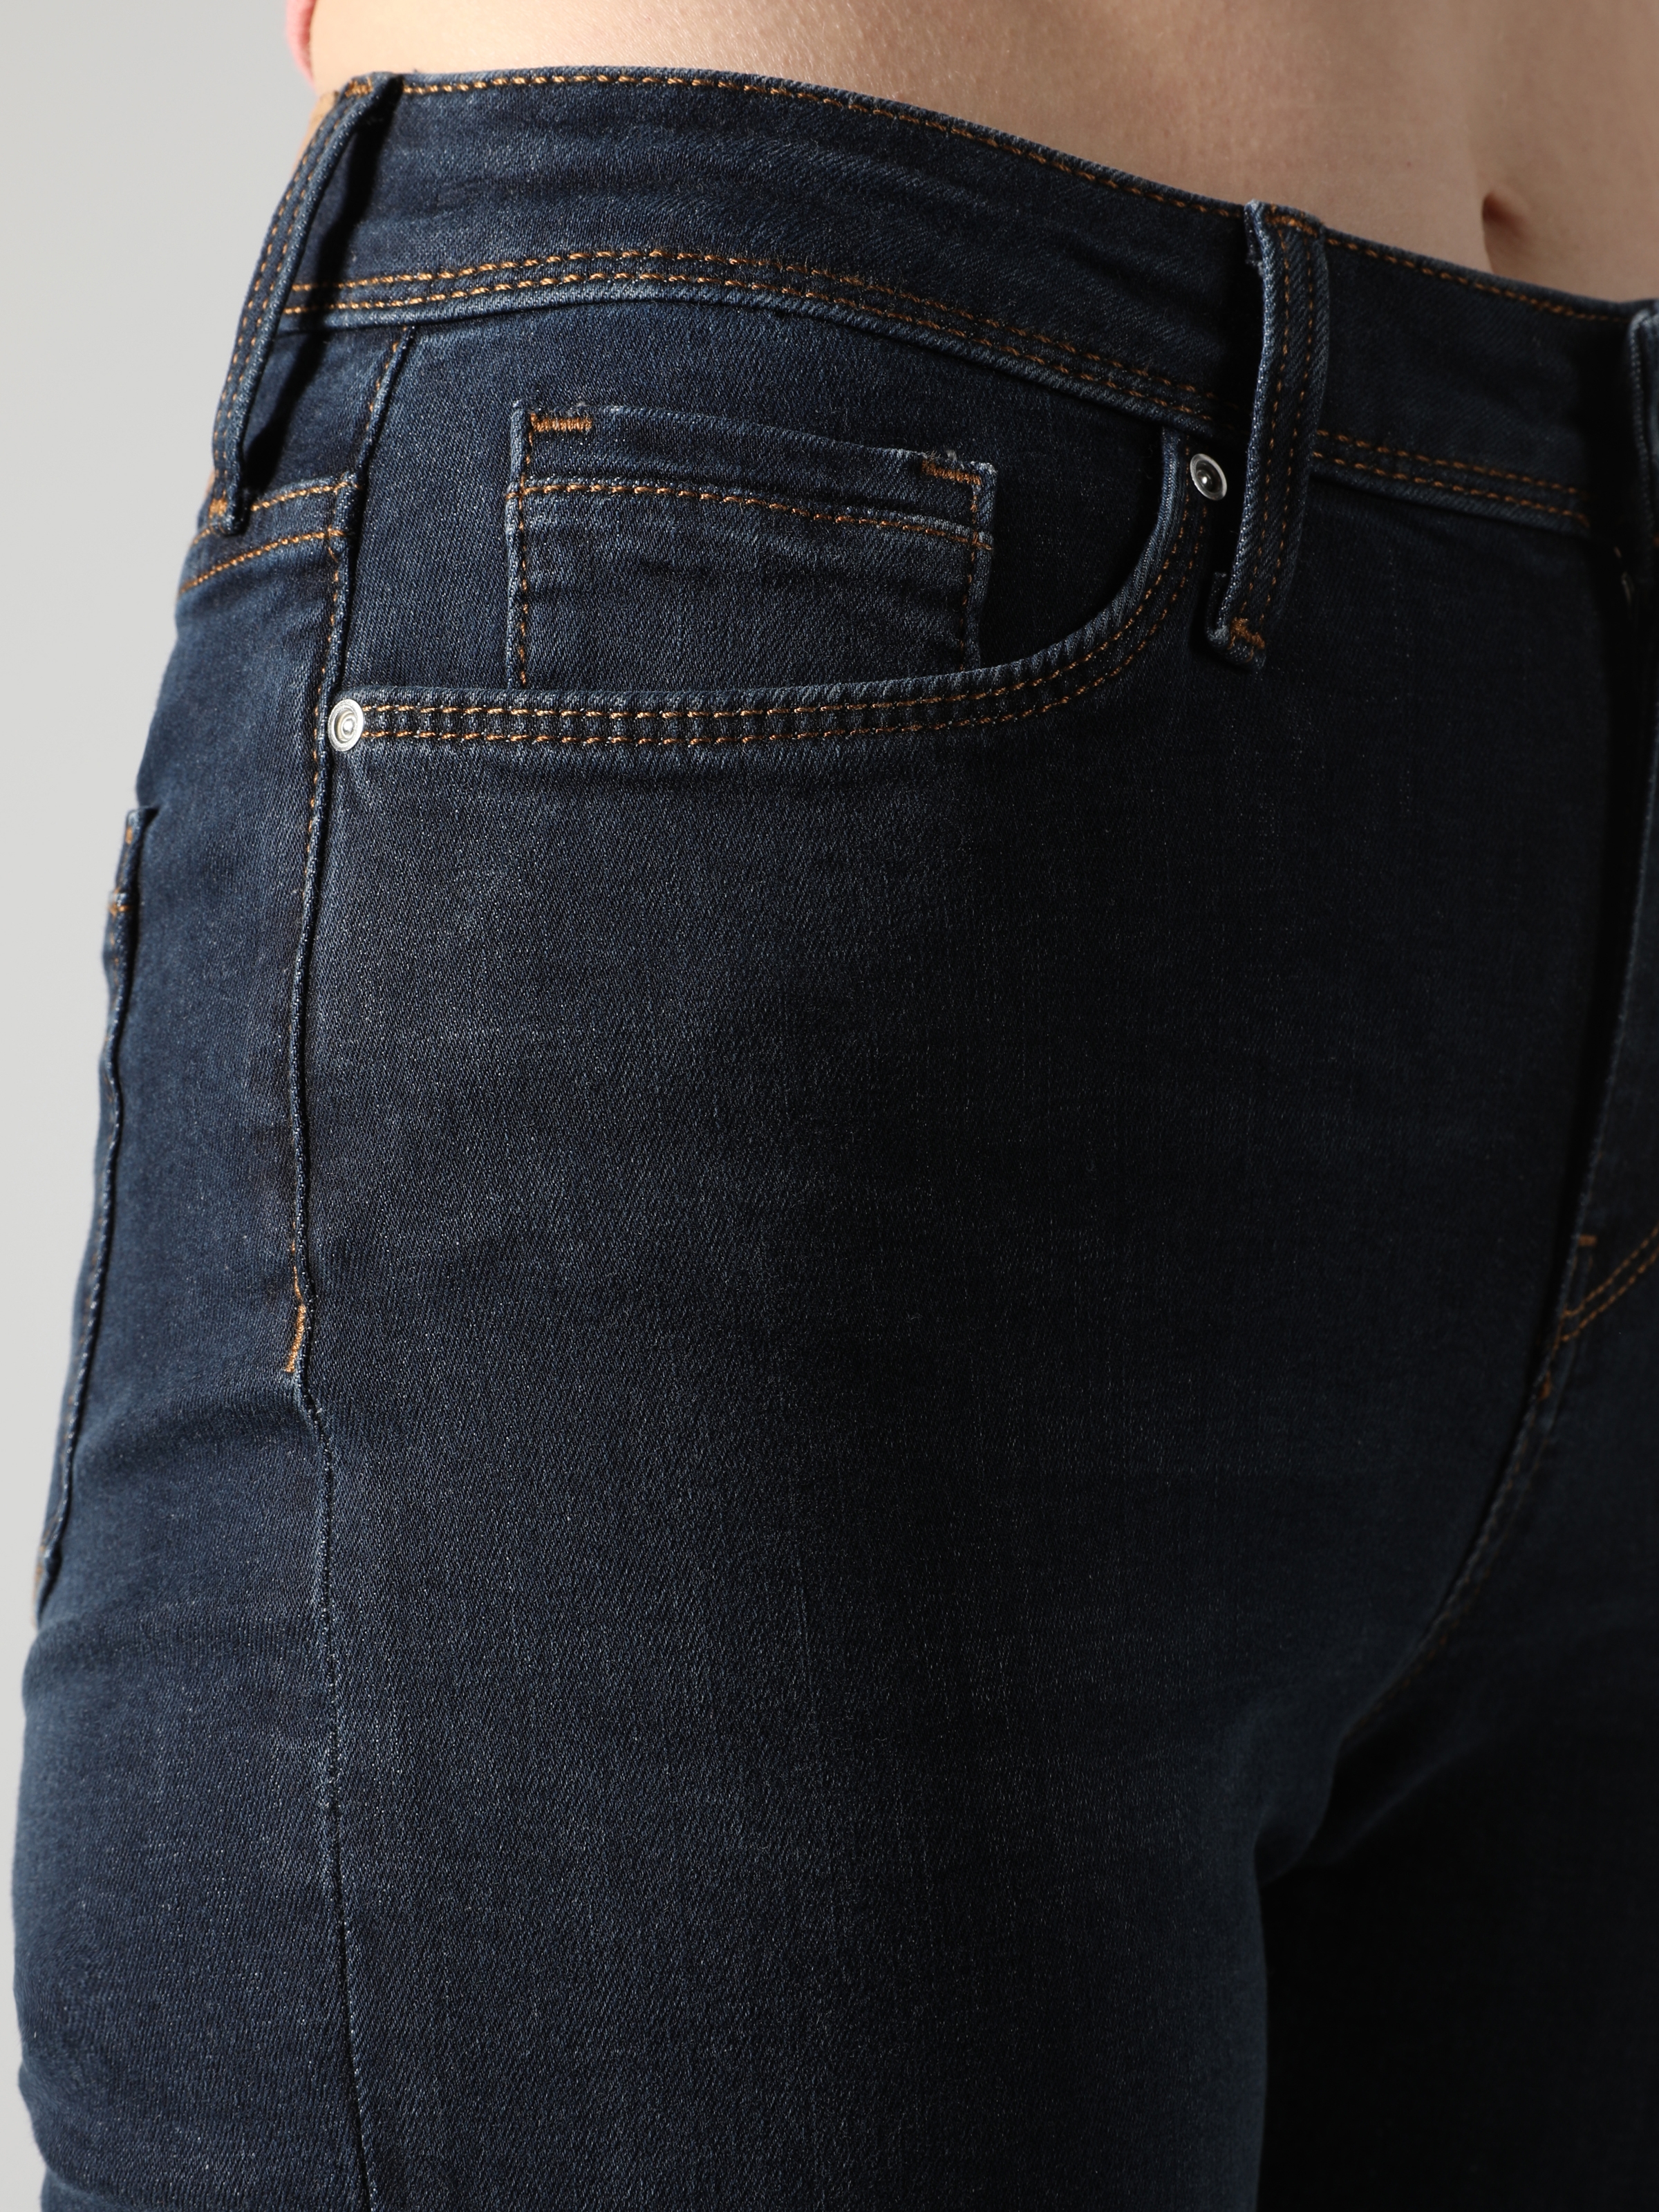 Afișați detalii pentru Pantaloni De Dama Albastru inchis Slim Fit 703 CARLA